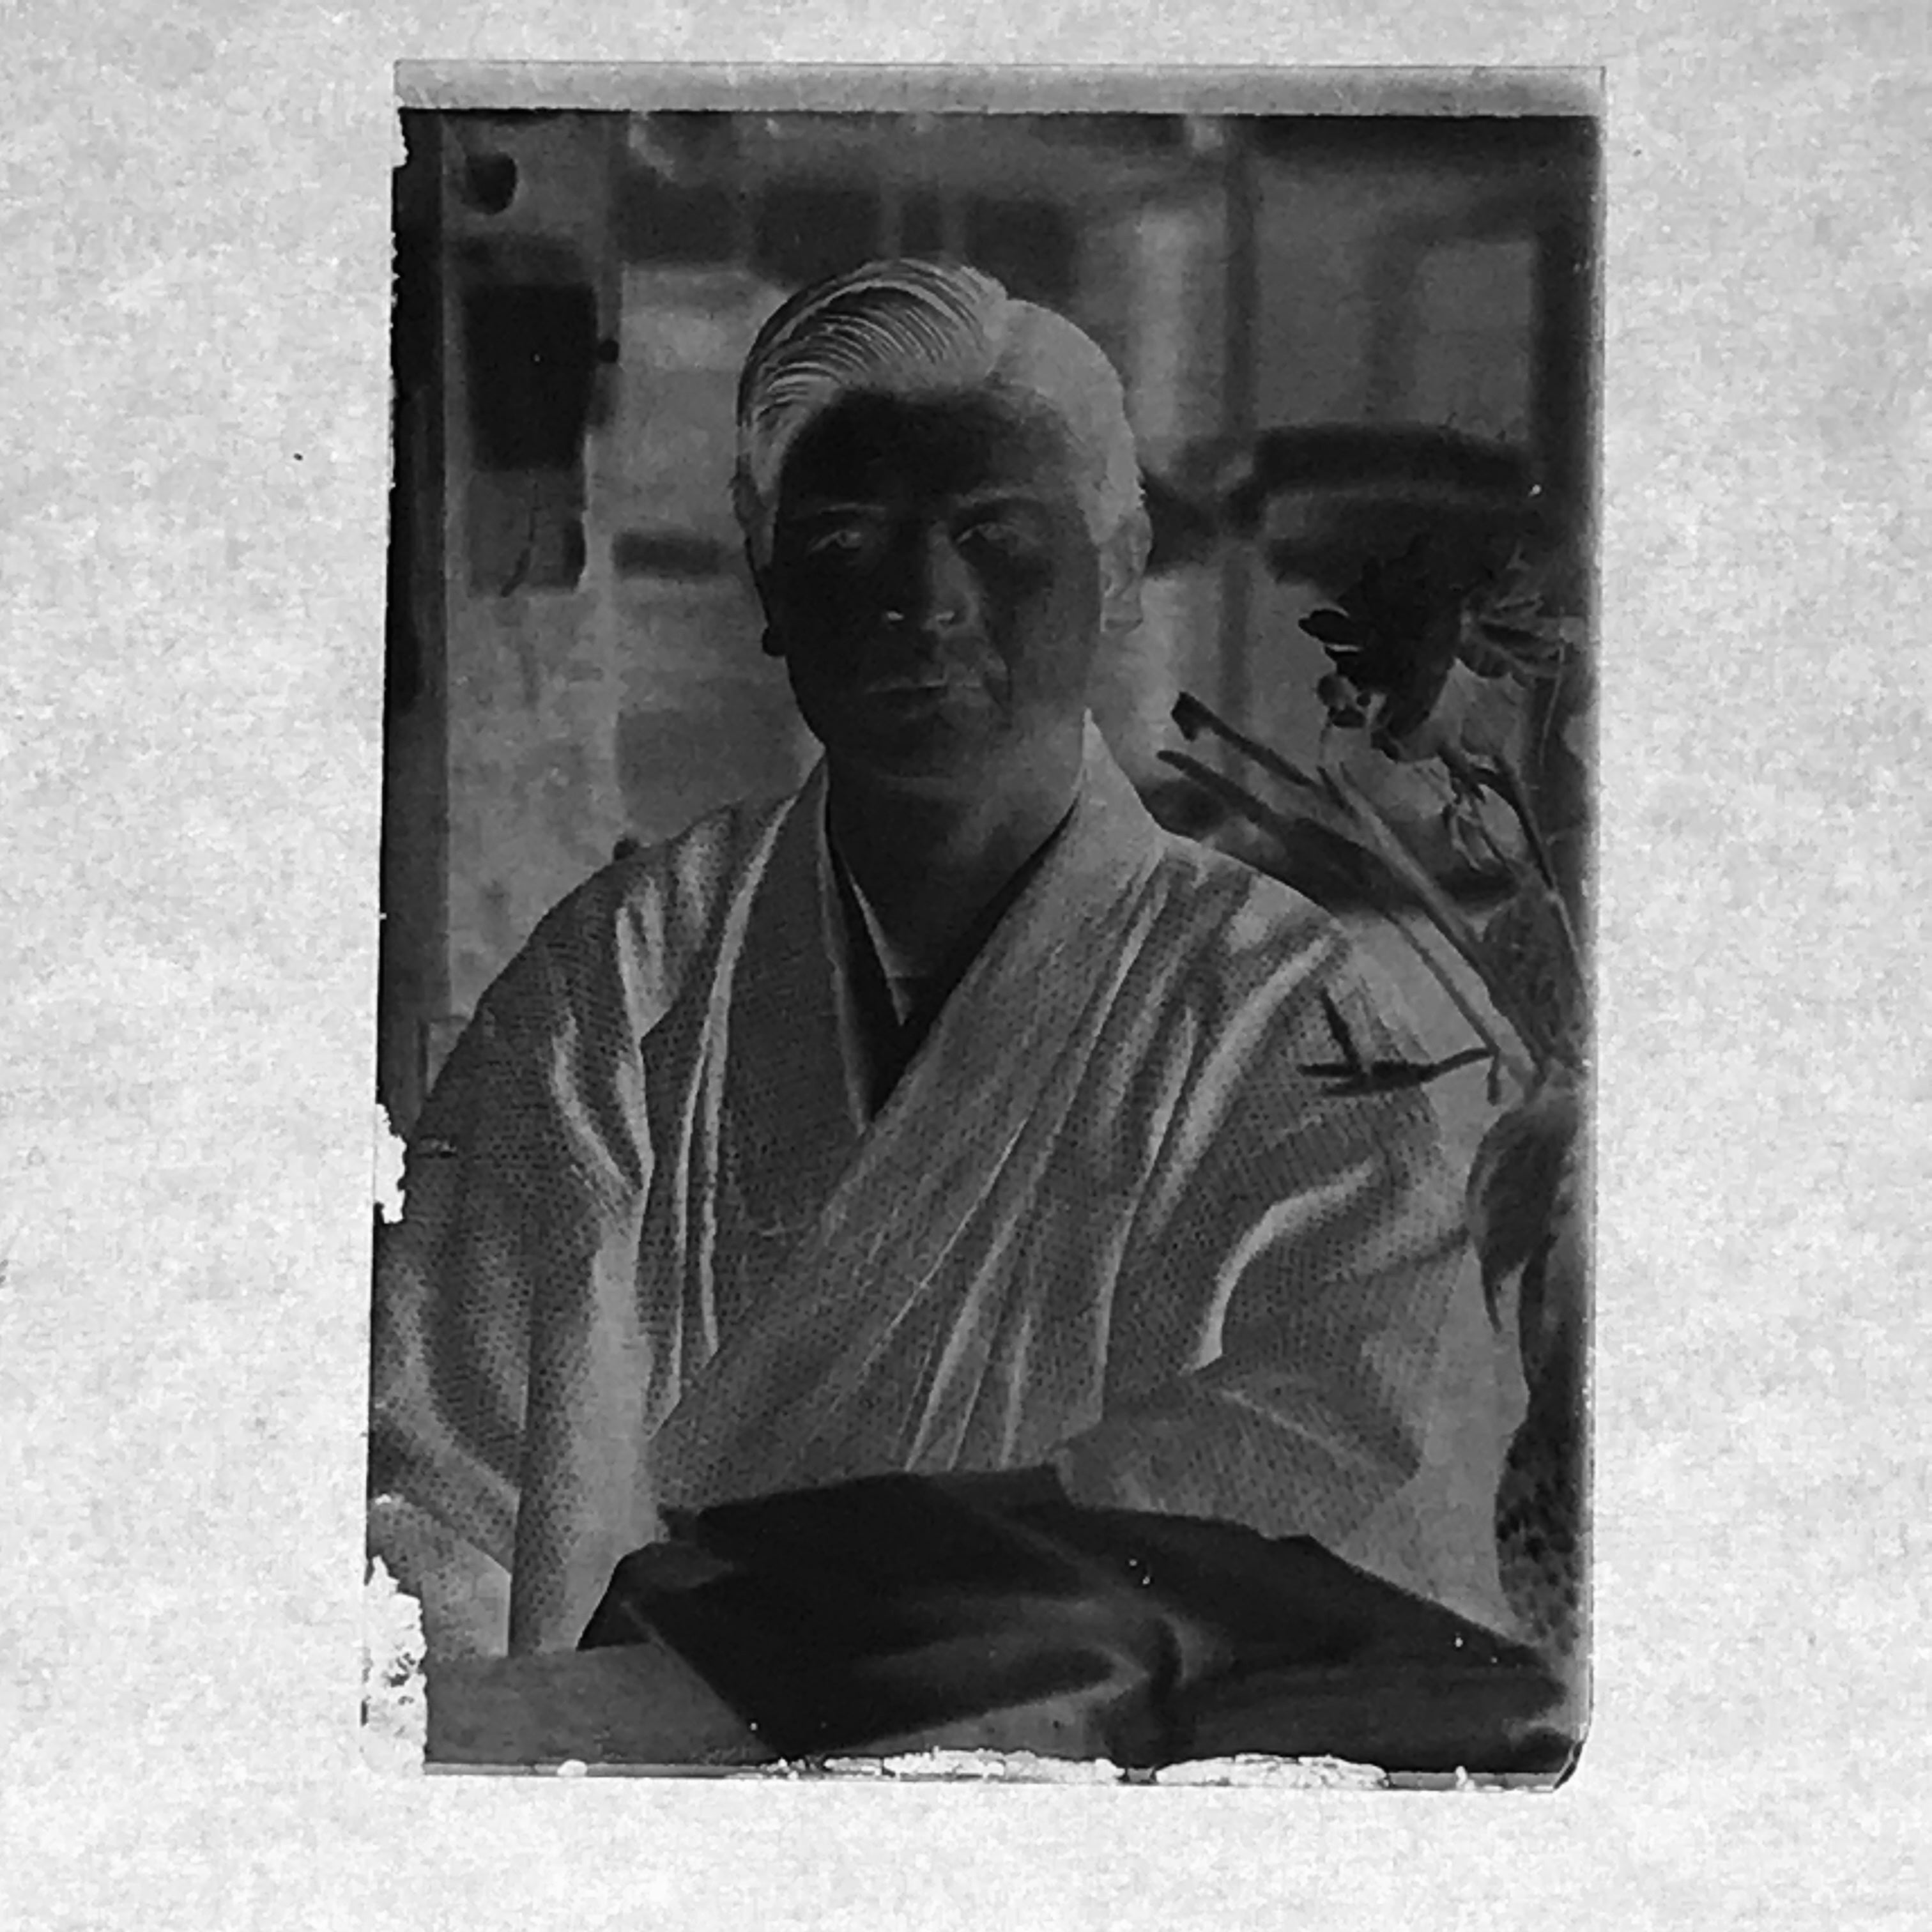 Antique Japanese Photo Glass Negative Plate C1900 Portrait Man Reading GN452